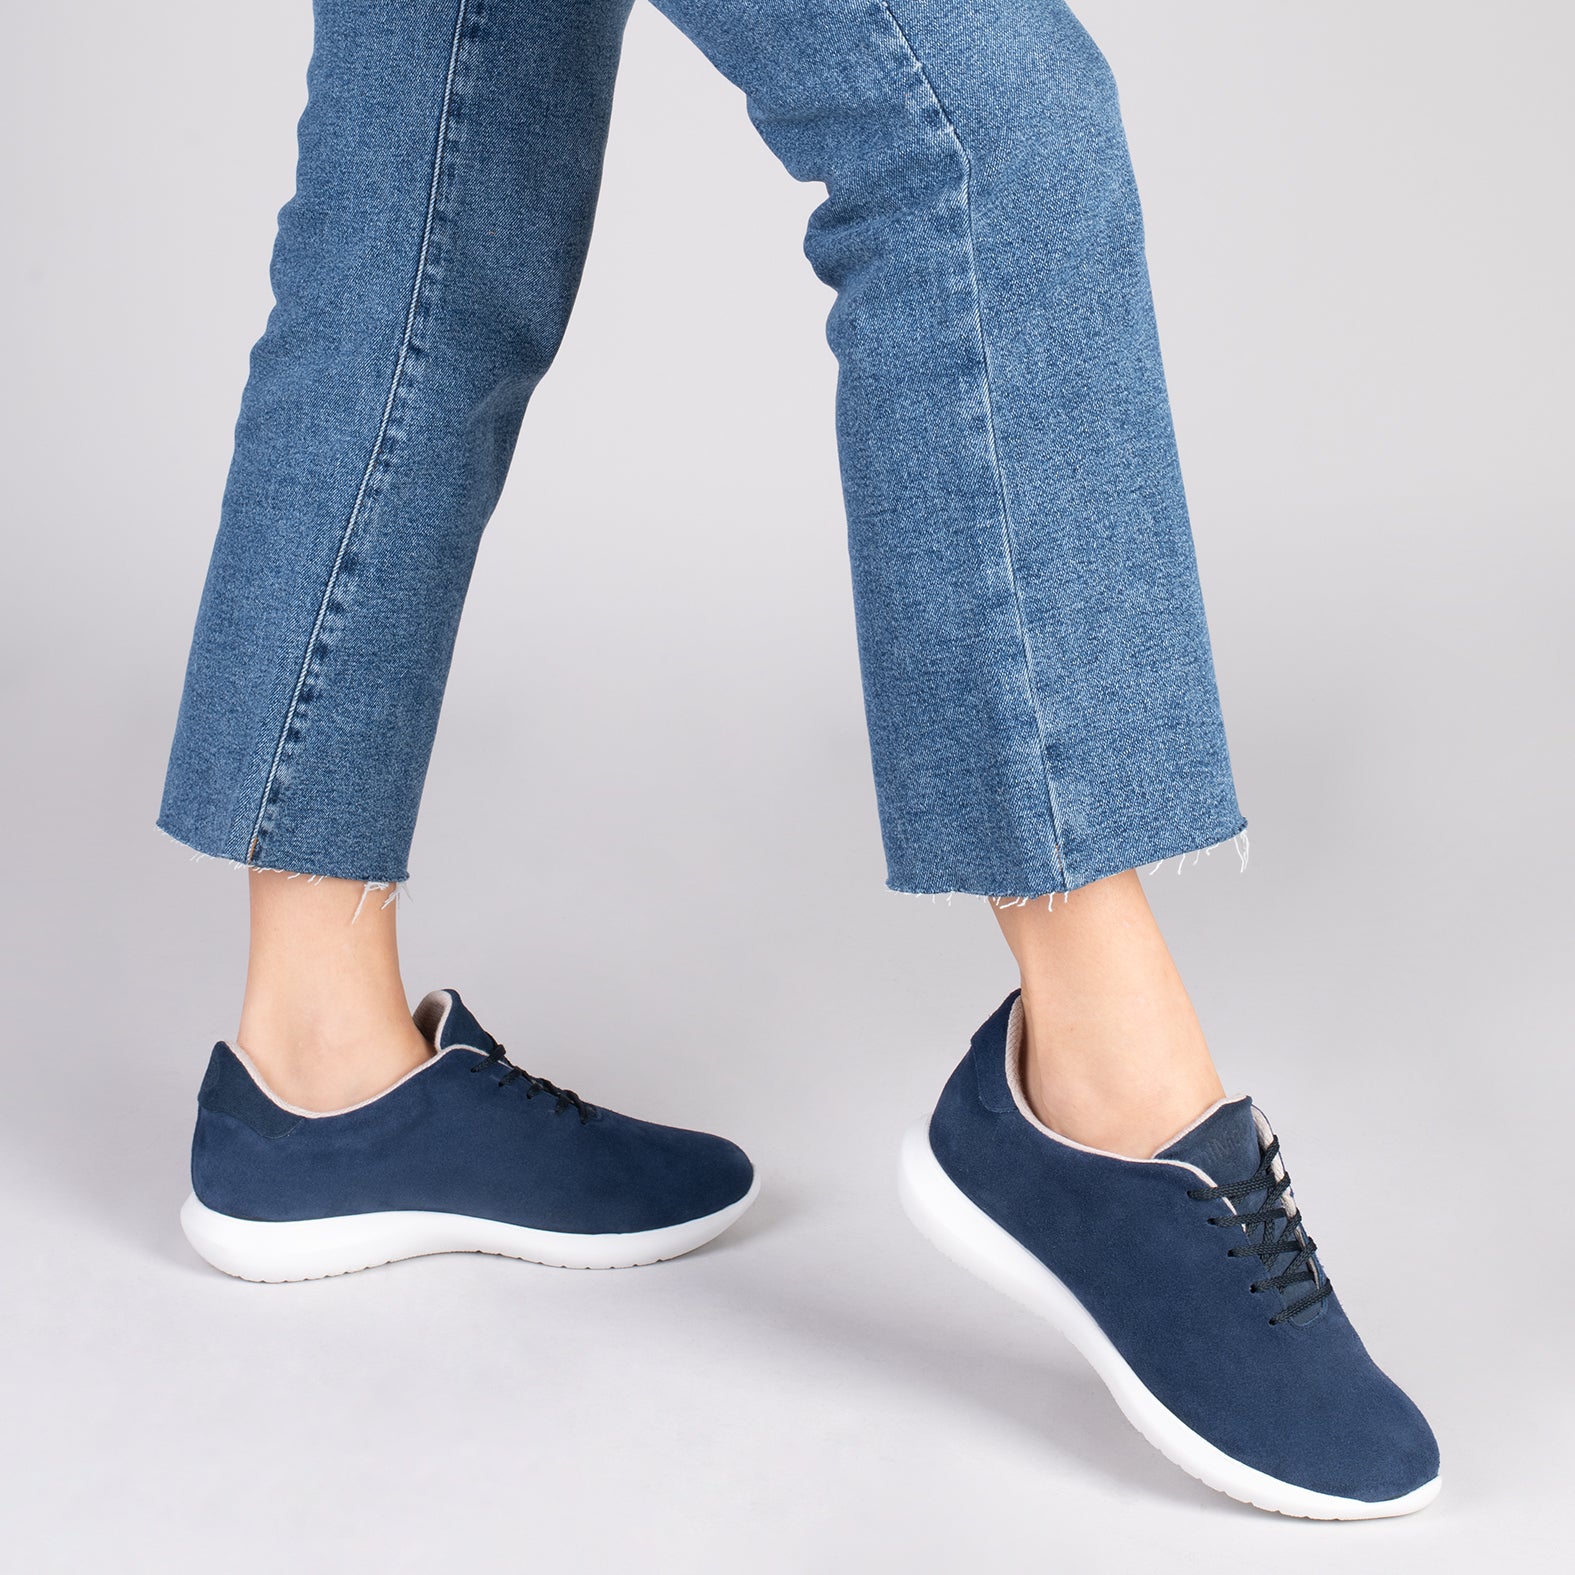 WALK – NAVY comfortable women’s sneakers